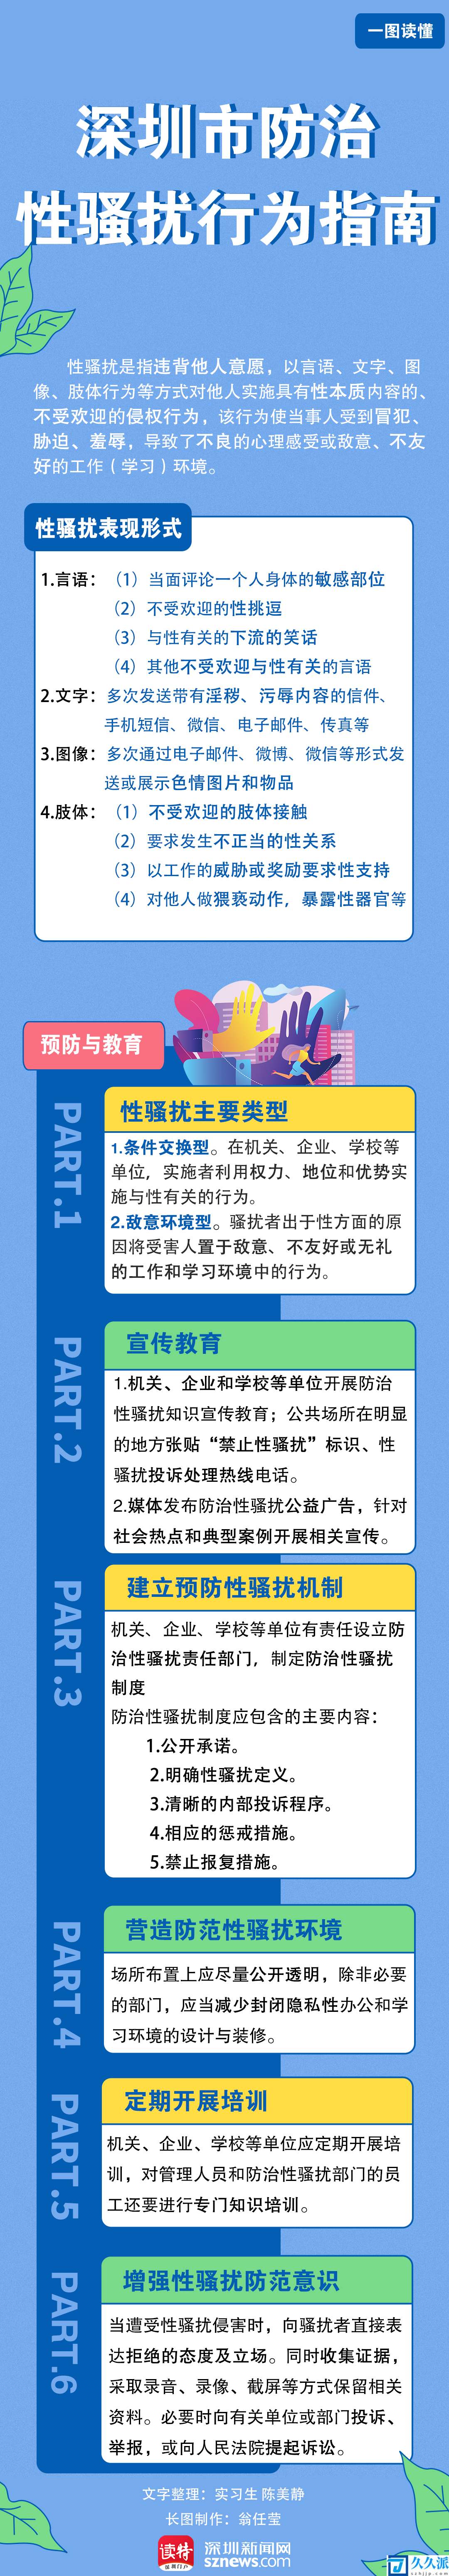 一图读懂(|,深圳市防治性骚扰行为指南让你大胆说“不”！)